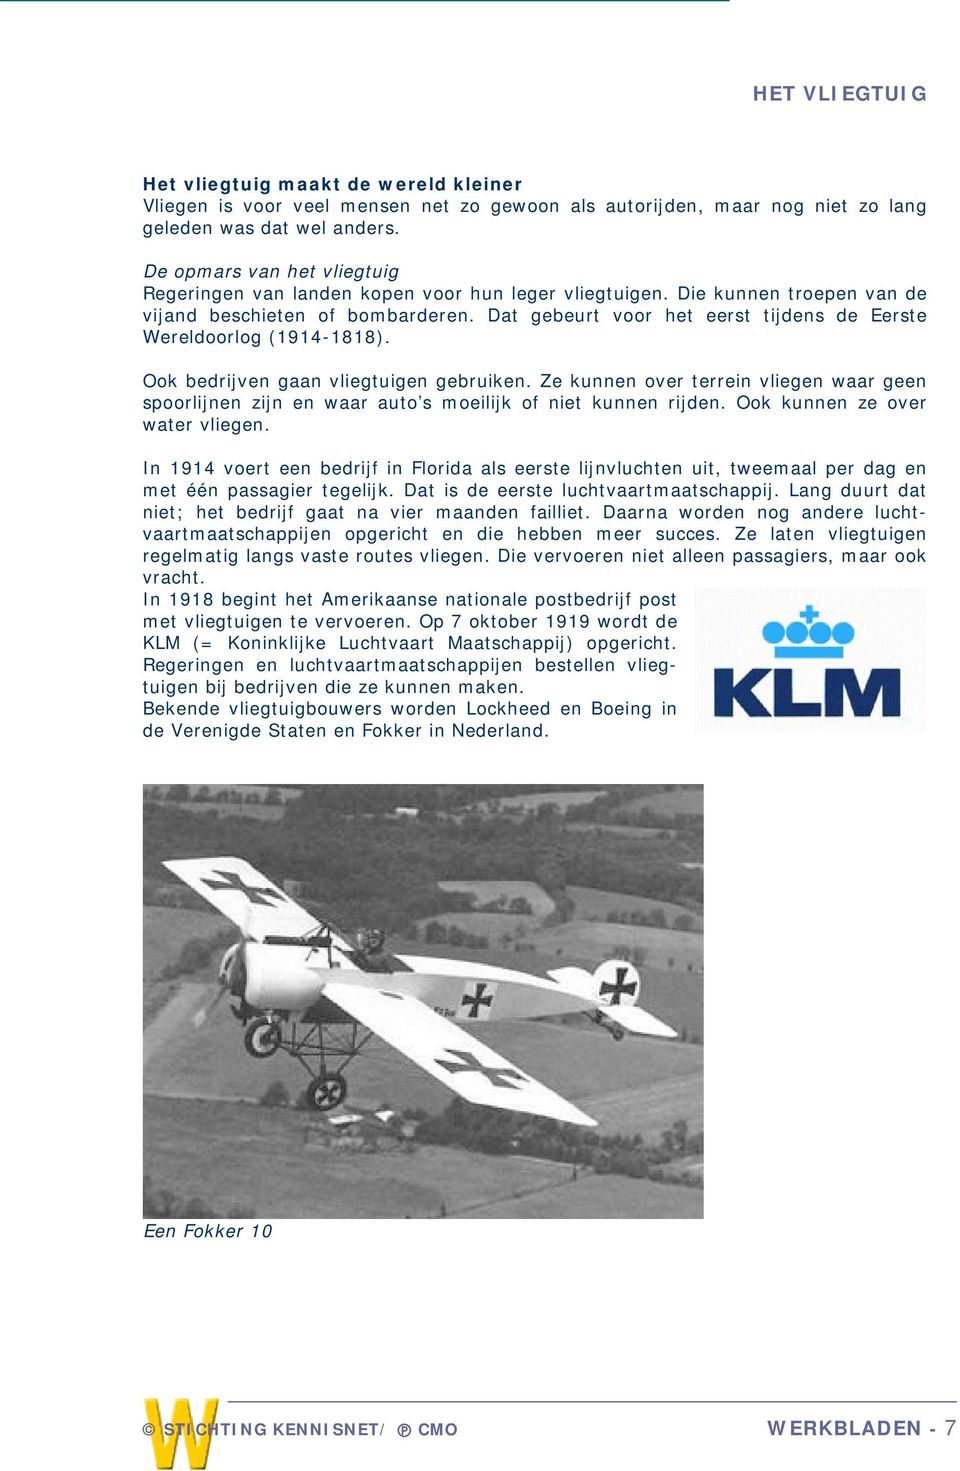 Dat gebeurt voor het eerst tijdens de Eerste Wereldoorlog (1914-1818). Ook bedrijven gaan vliegtuigen gebruiken.